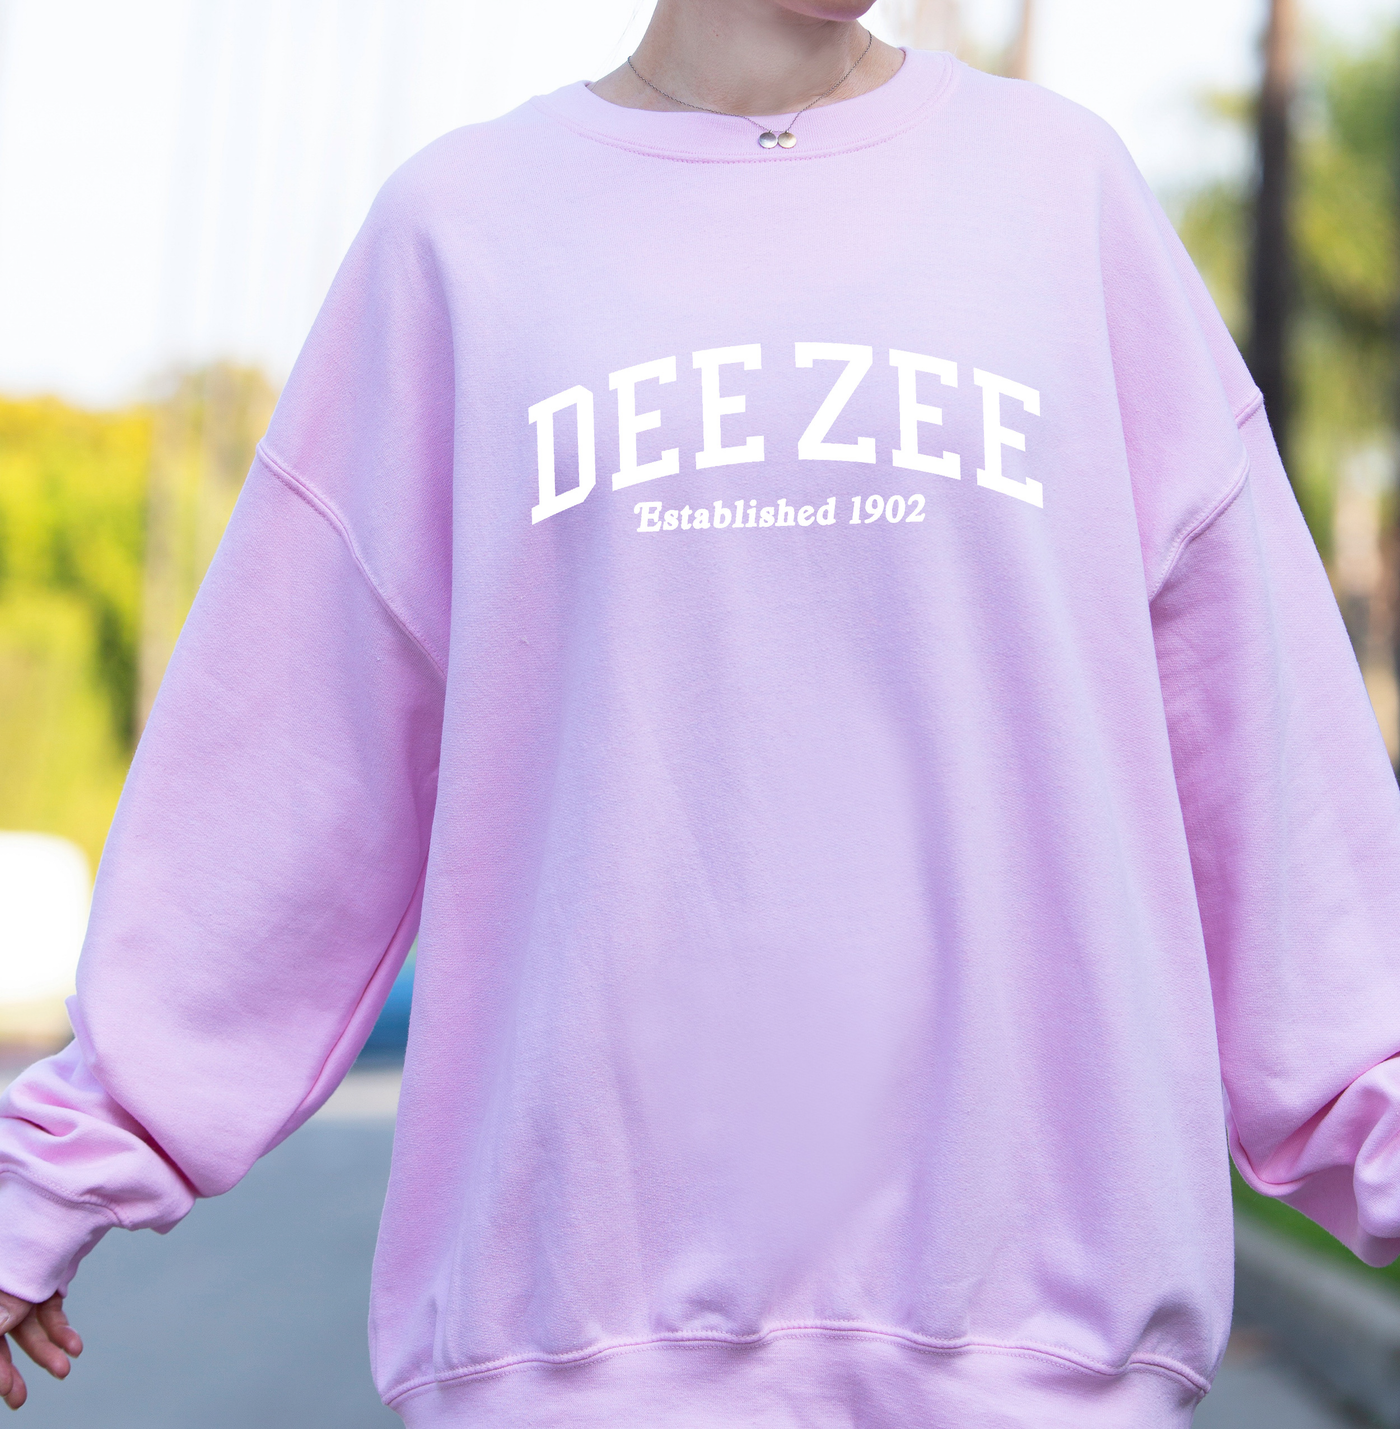 Delta Zeta Sorority Varsity College Dee Zee Crewneck Sweatshirt